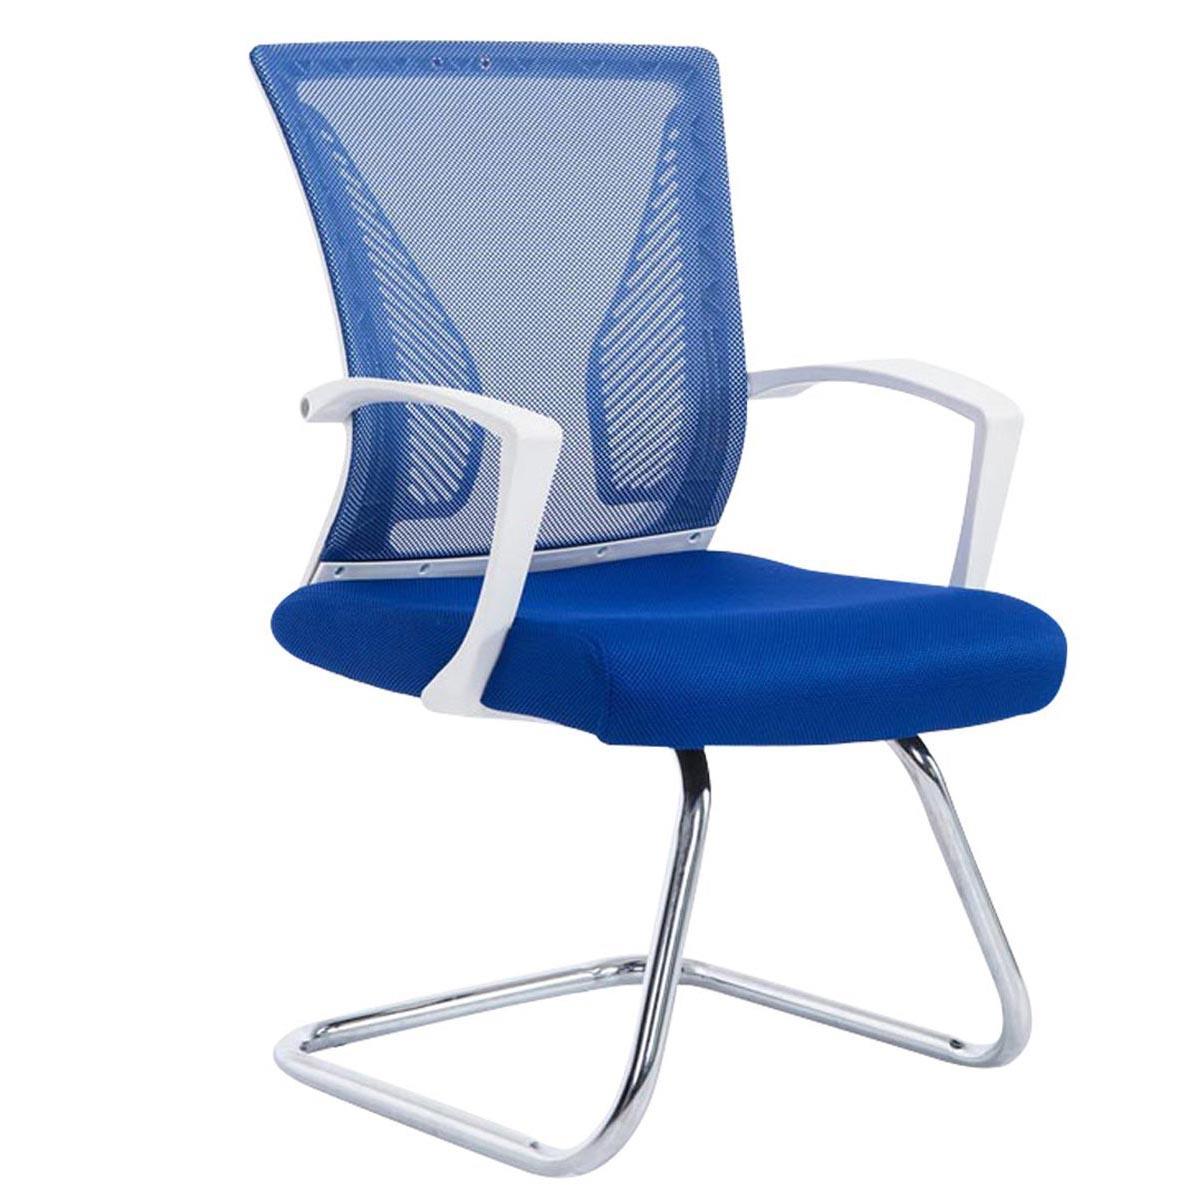 Cadeira de Visita CUBA V, Estrutura Metálica, Malha Respirável, Cor Azul